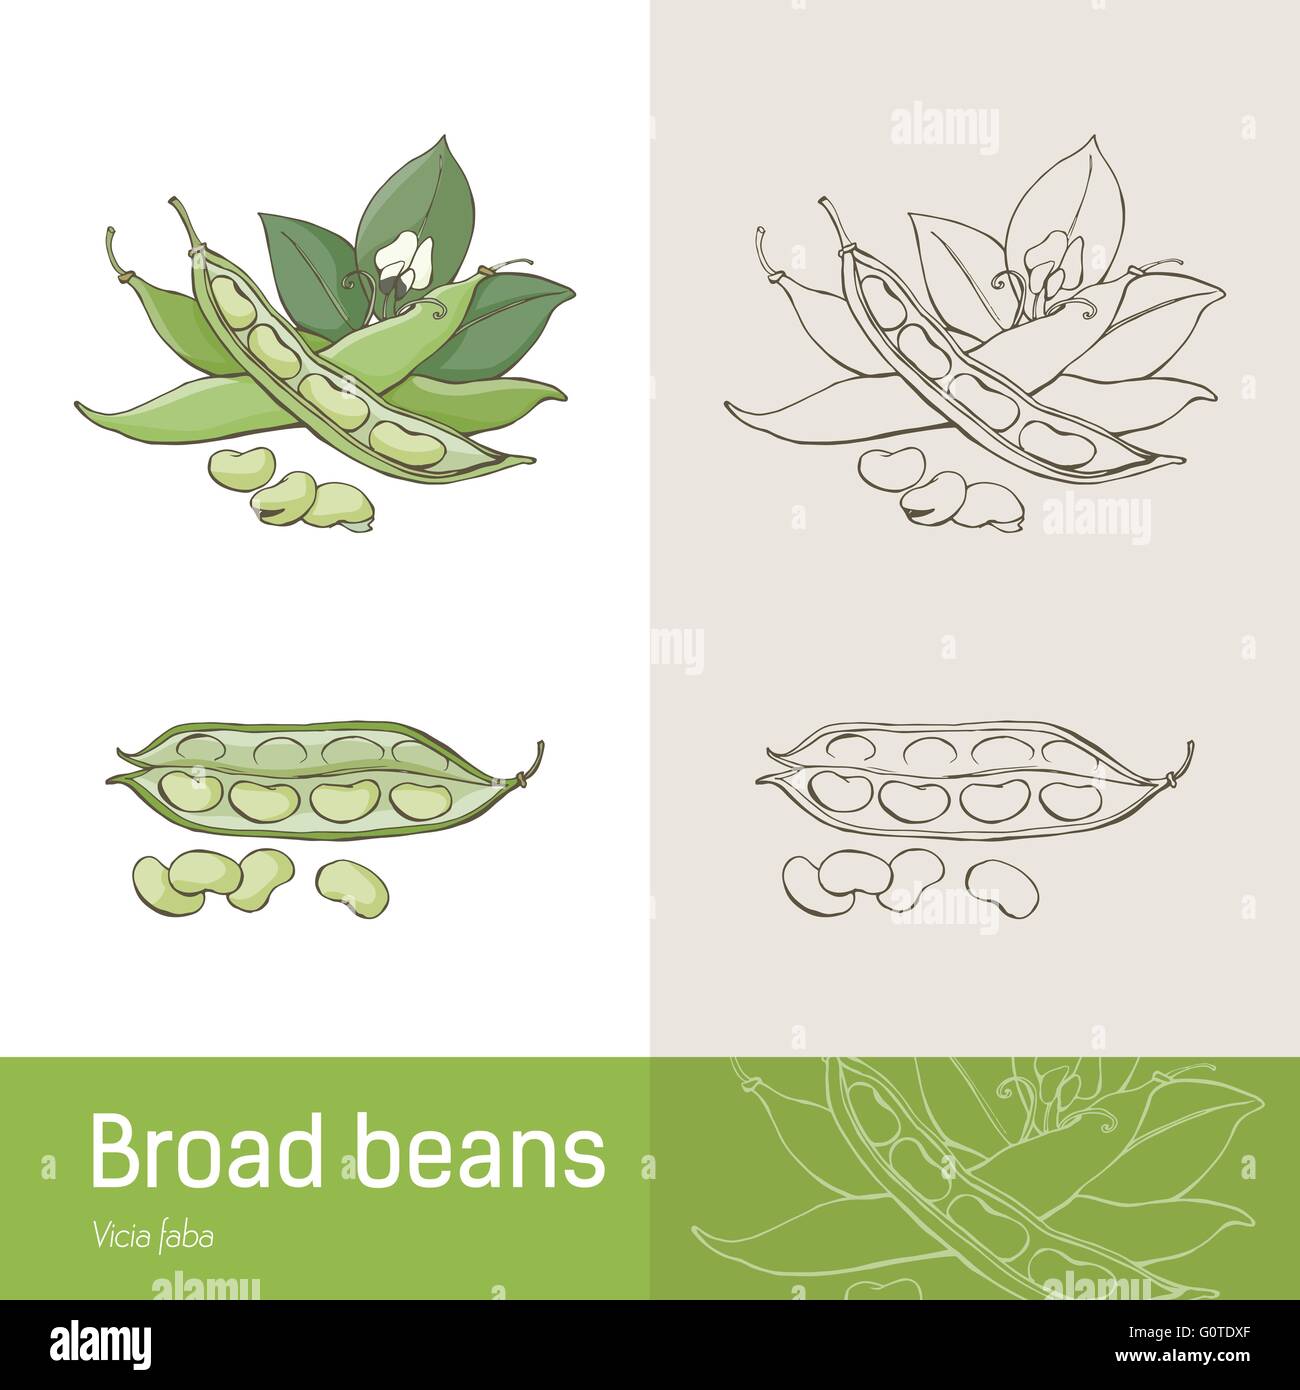 Saubohnen oder dicke Bohnen hand gezeichnete botanische Zeichnung Stock Vektor